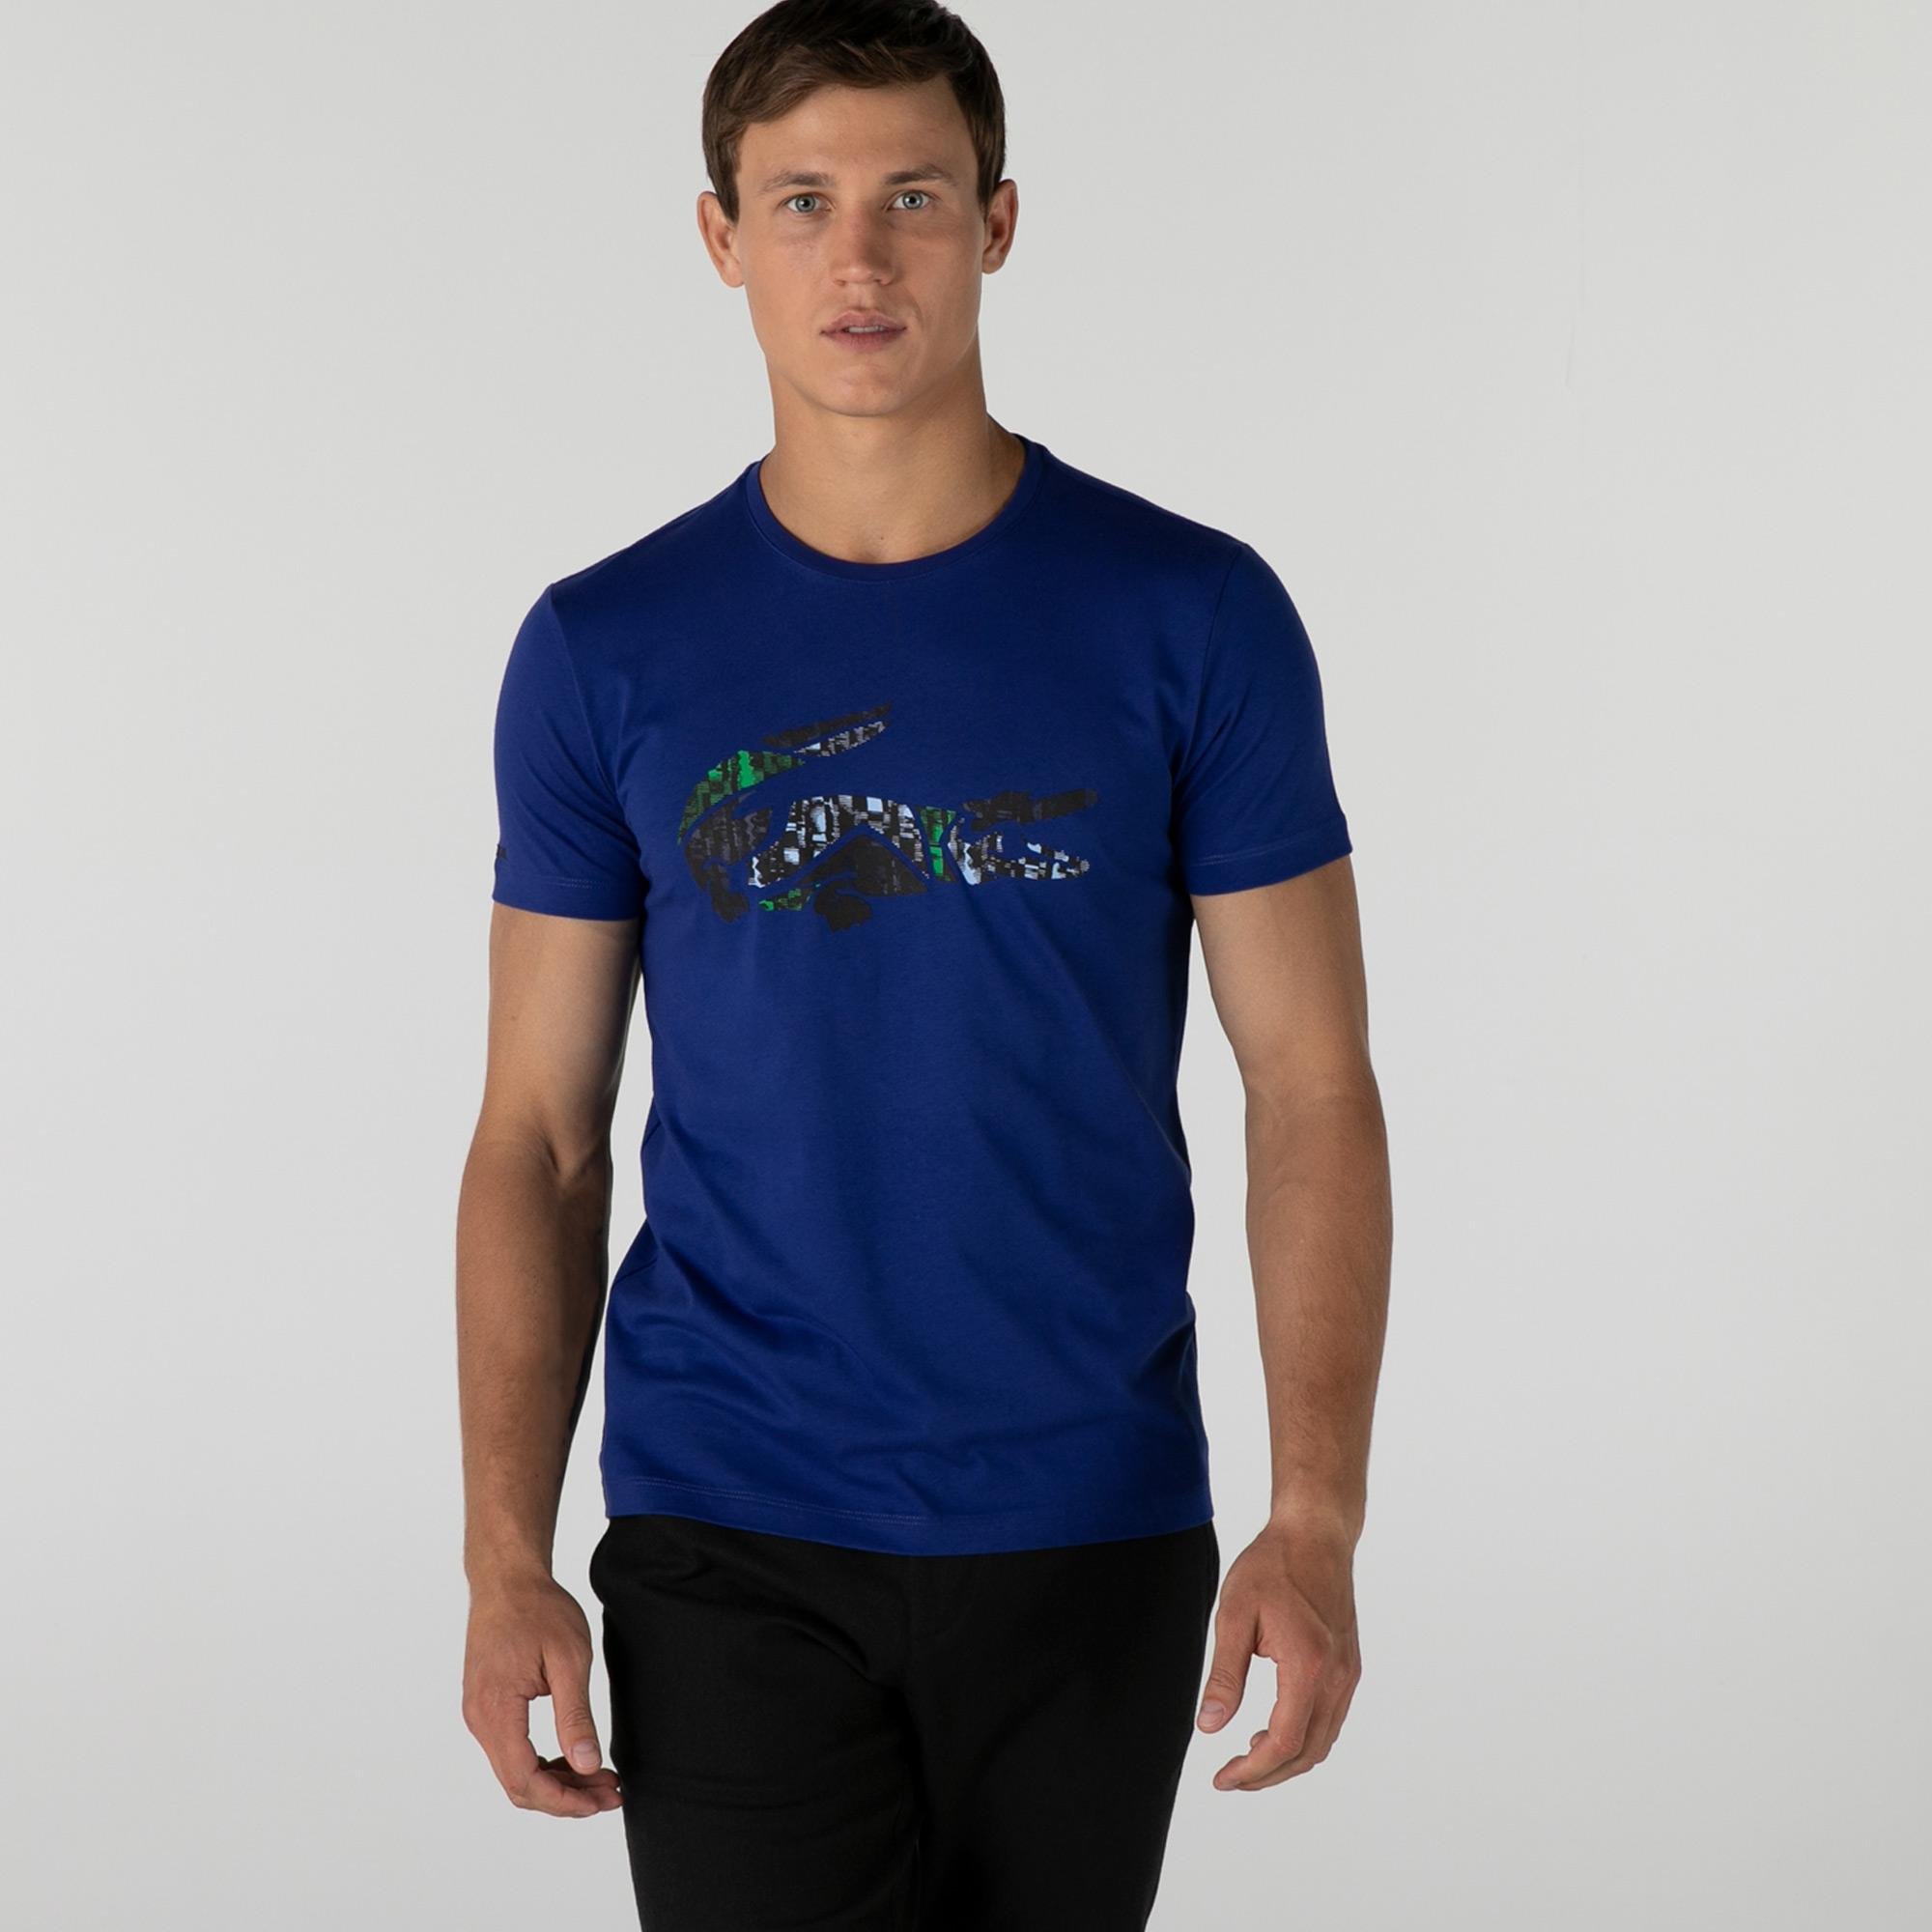 Lacoste Men's Slim Fit T-shirt